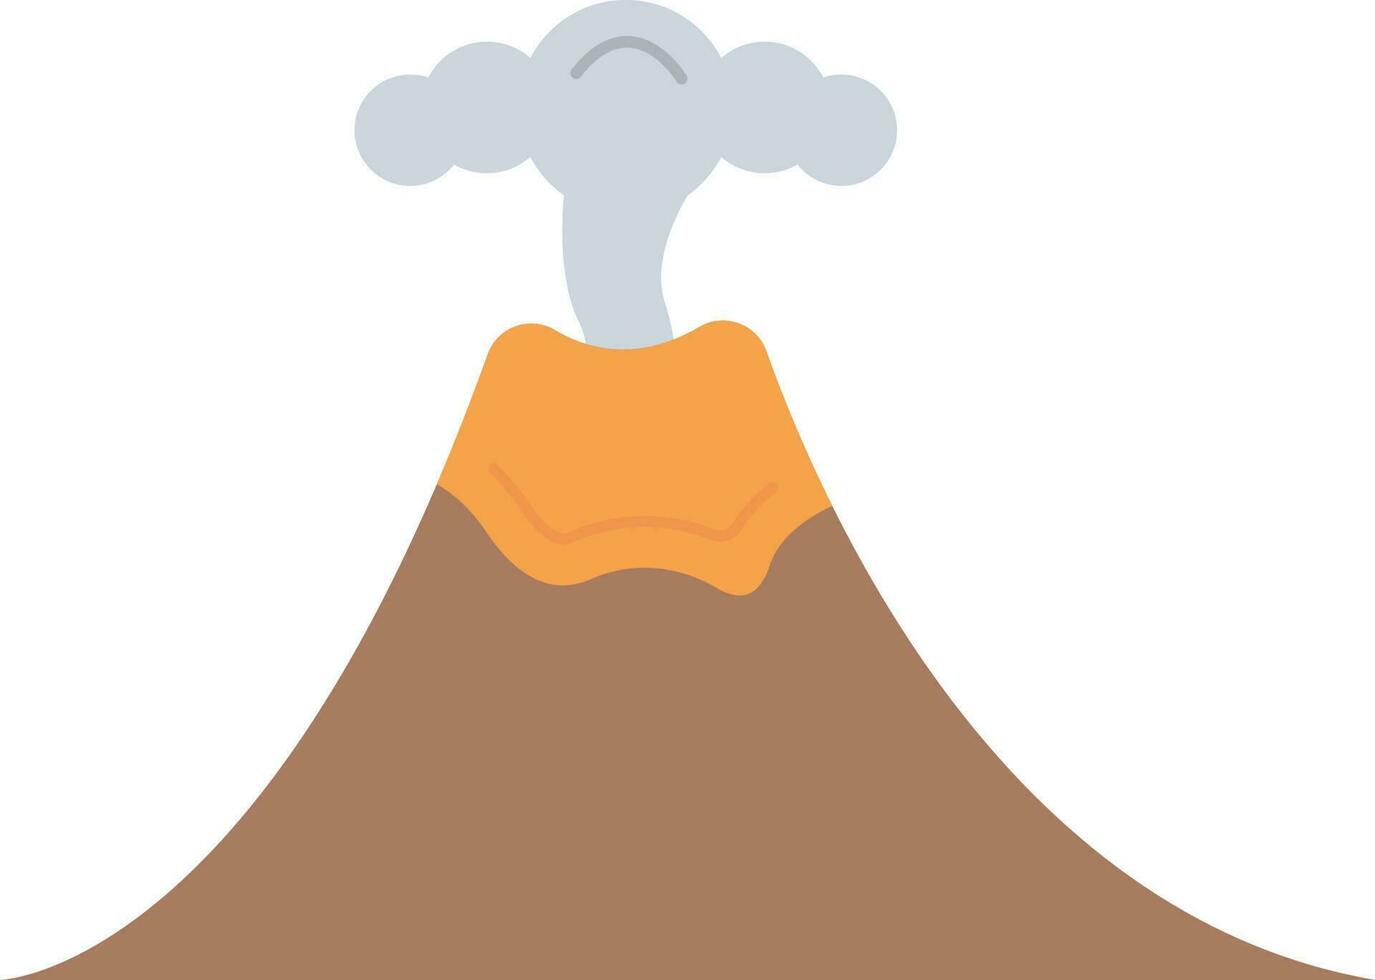 Volcano icon vector image.